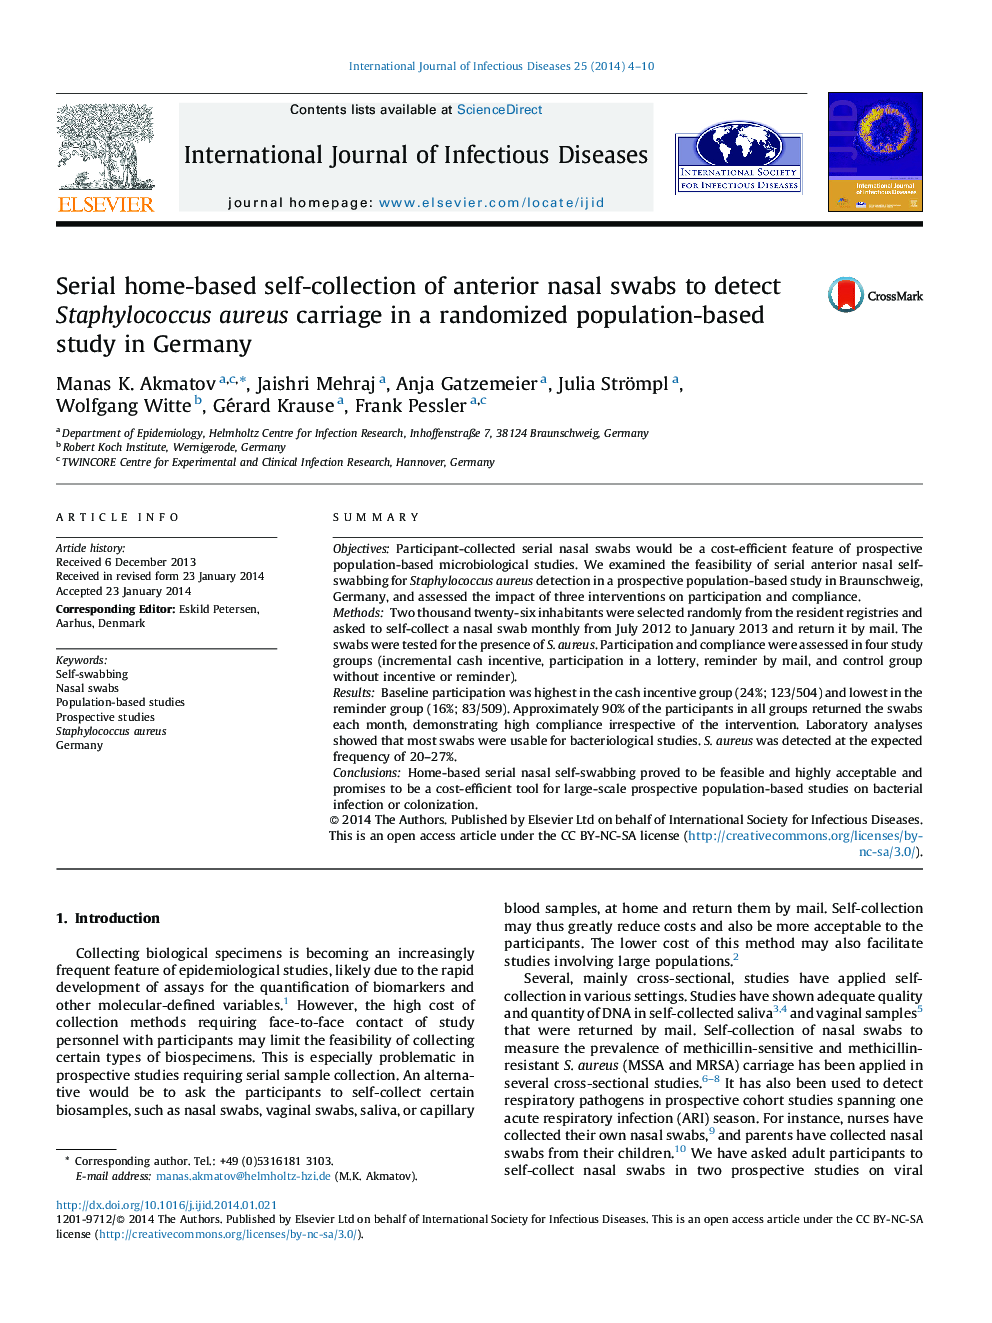 خودآزمایی مجموعه ای از سواب های بینی پیشانی برای تشخیص حمل و نقل استافیلوکوکوس اورئوس در یک مطالعه مبتنی بر جمعیتی تصادفی در آلمان 